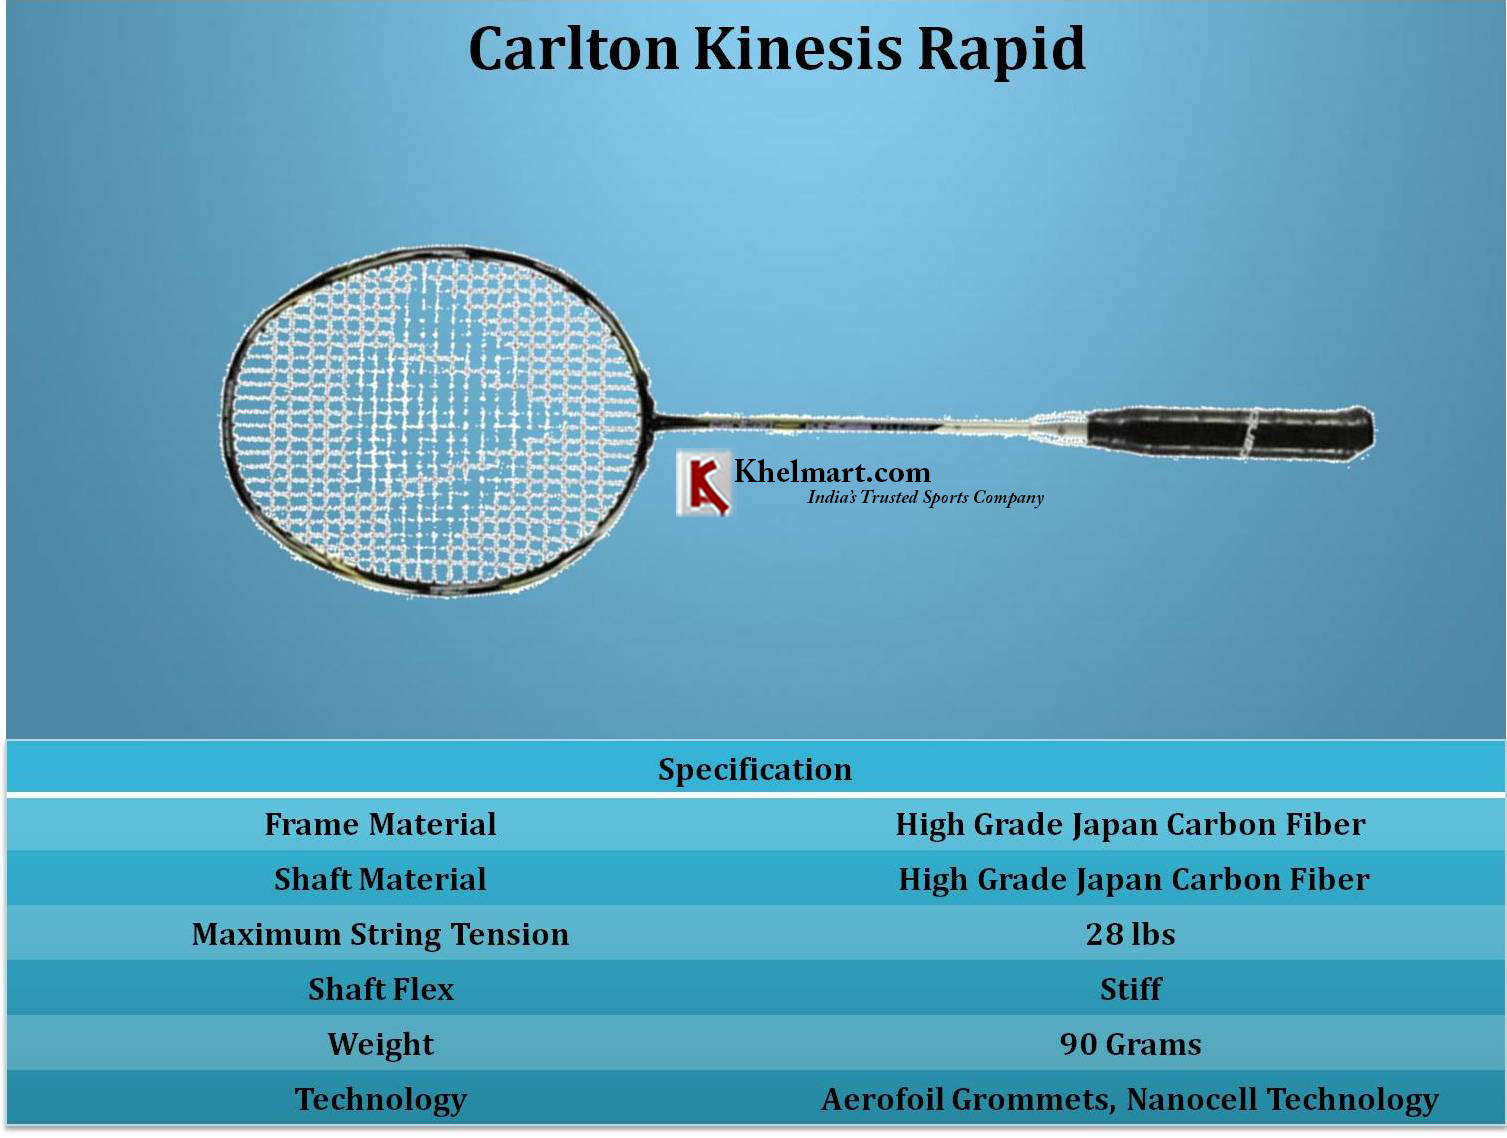 Carlton_Kinesis_Rapid_Specification_Khelmart_1